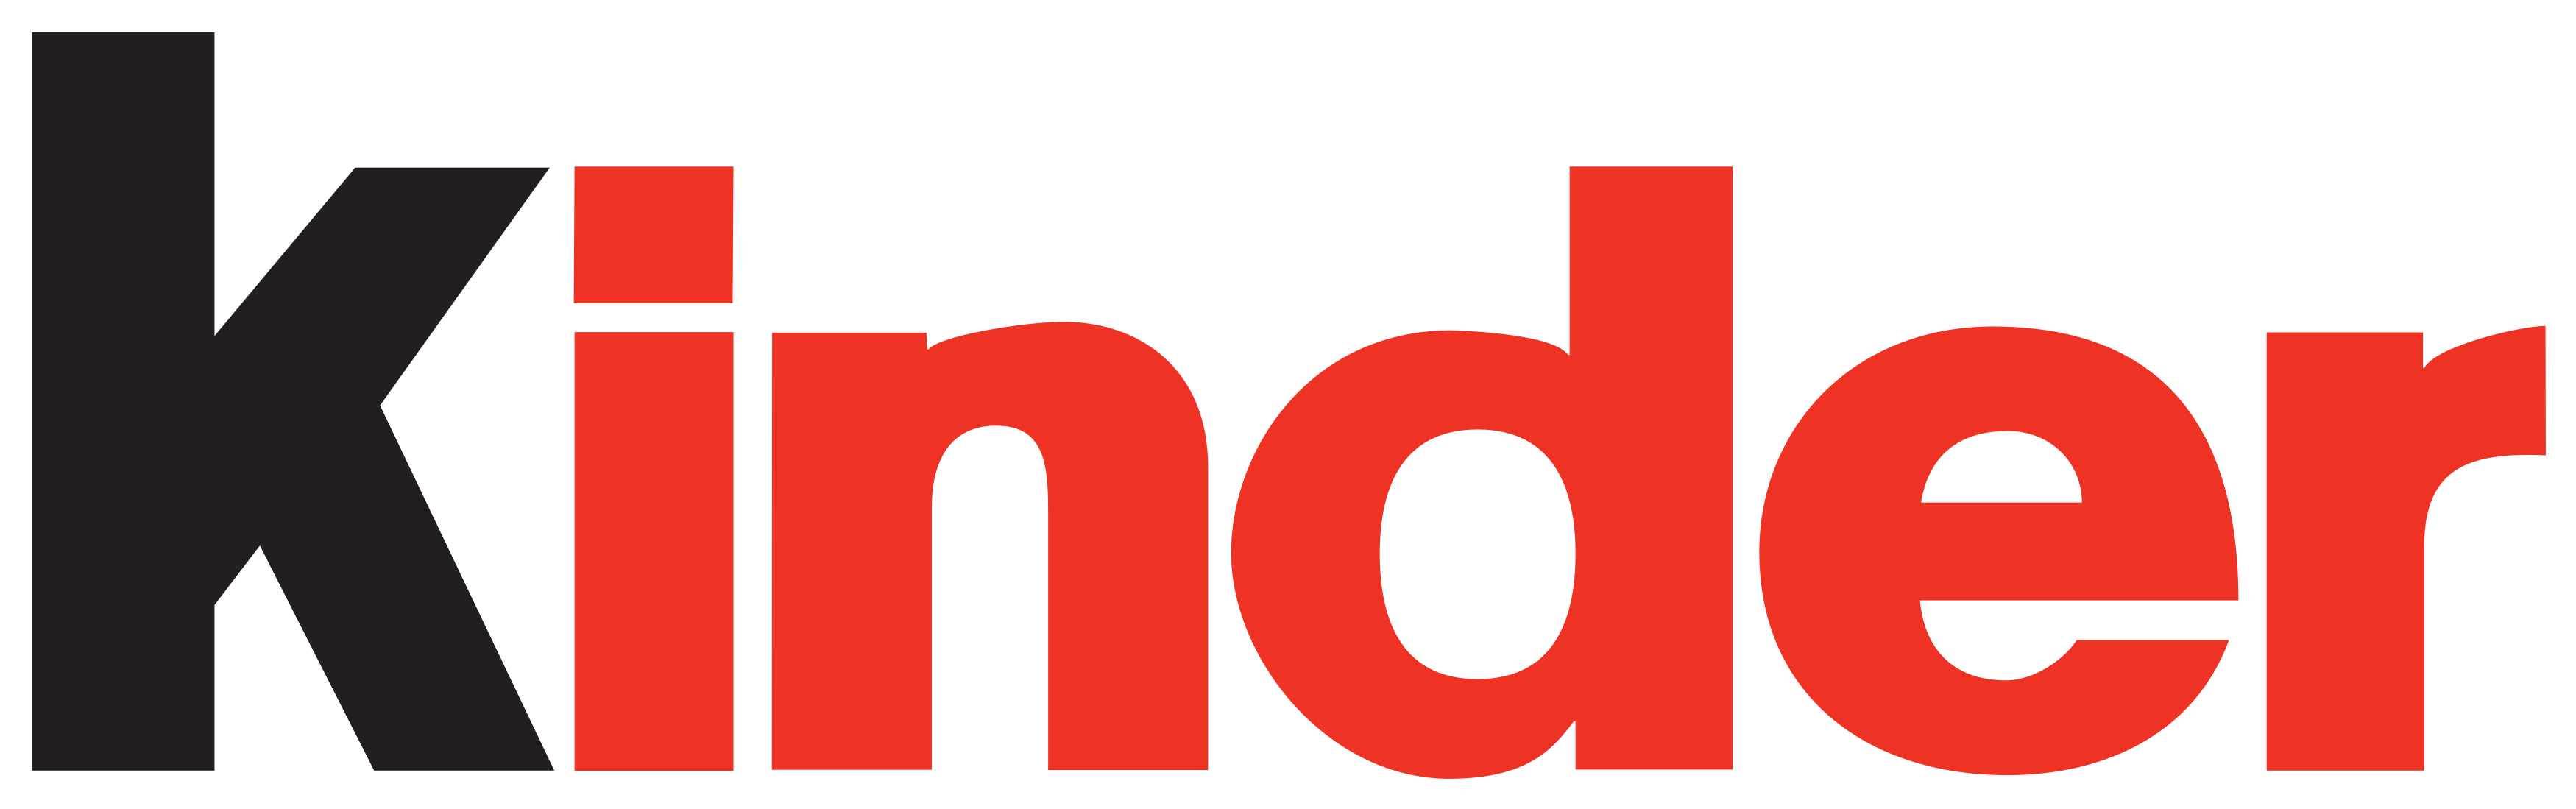 kinder logo - Kinder Logo